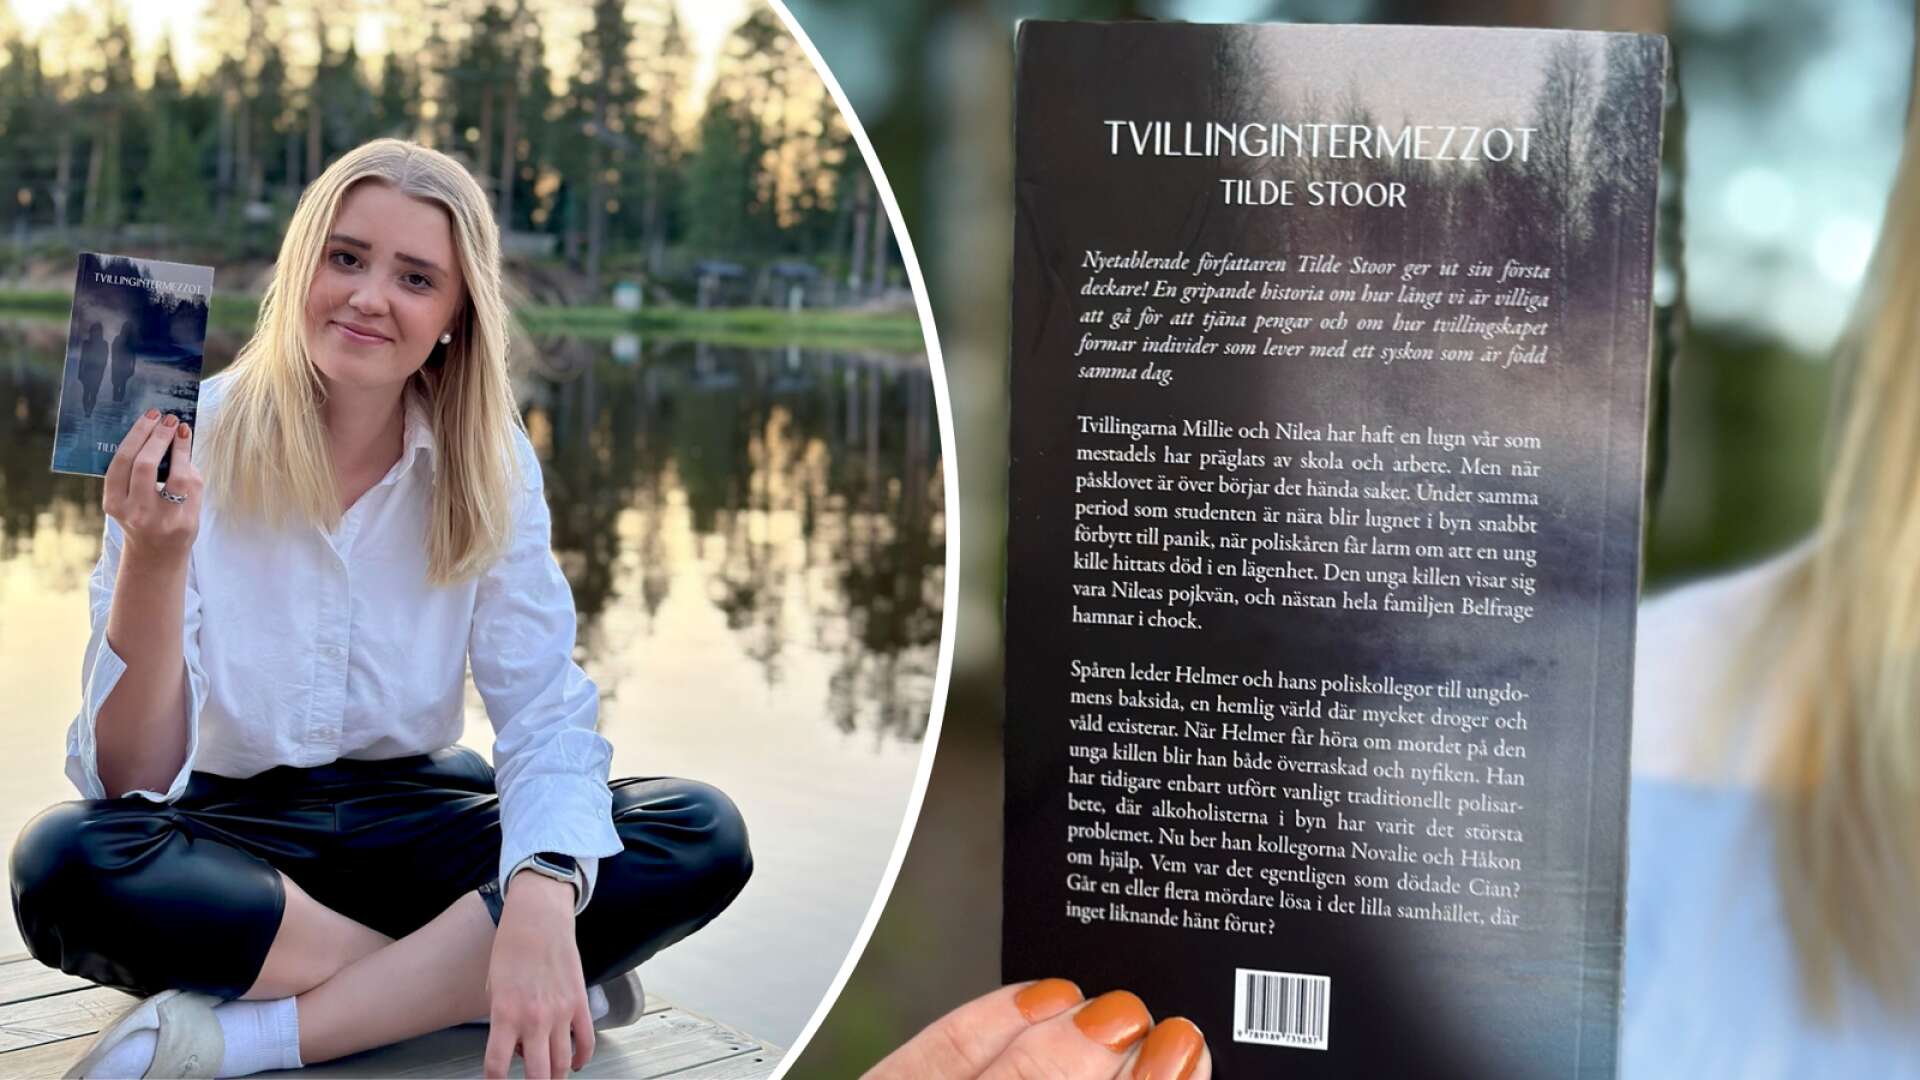 22 år gamla Tilde Stoor har gett ut sin första bok. 